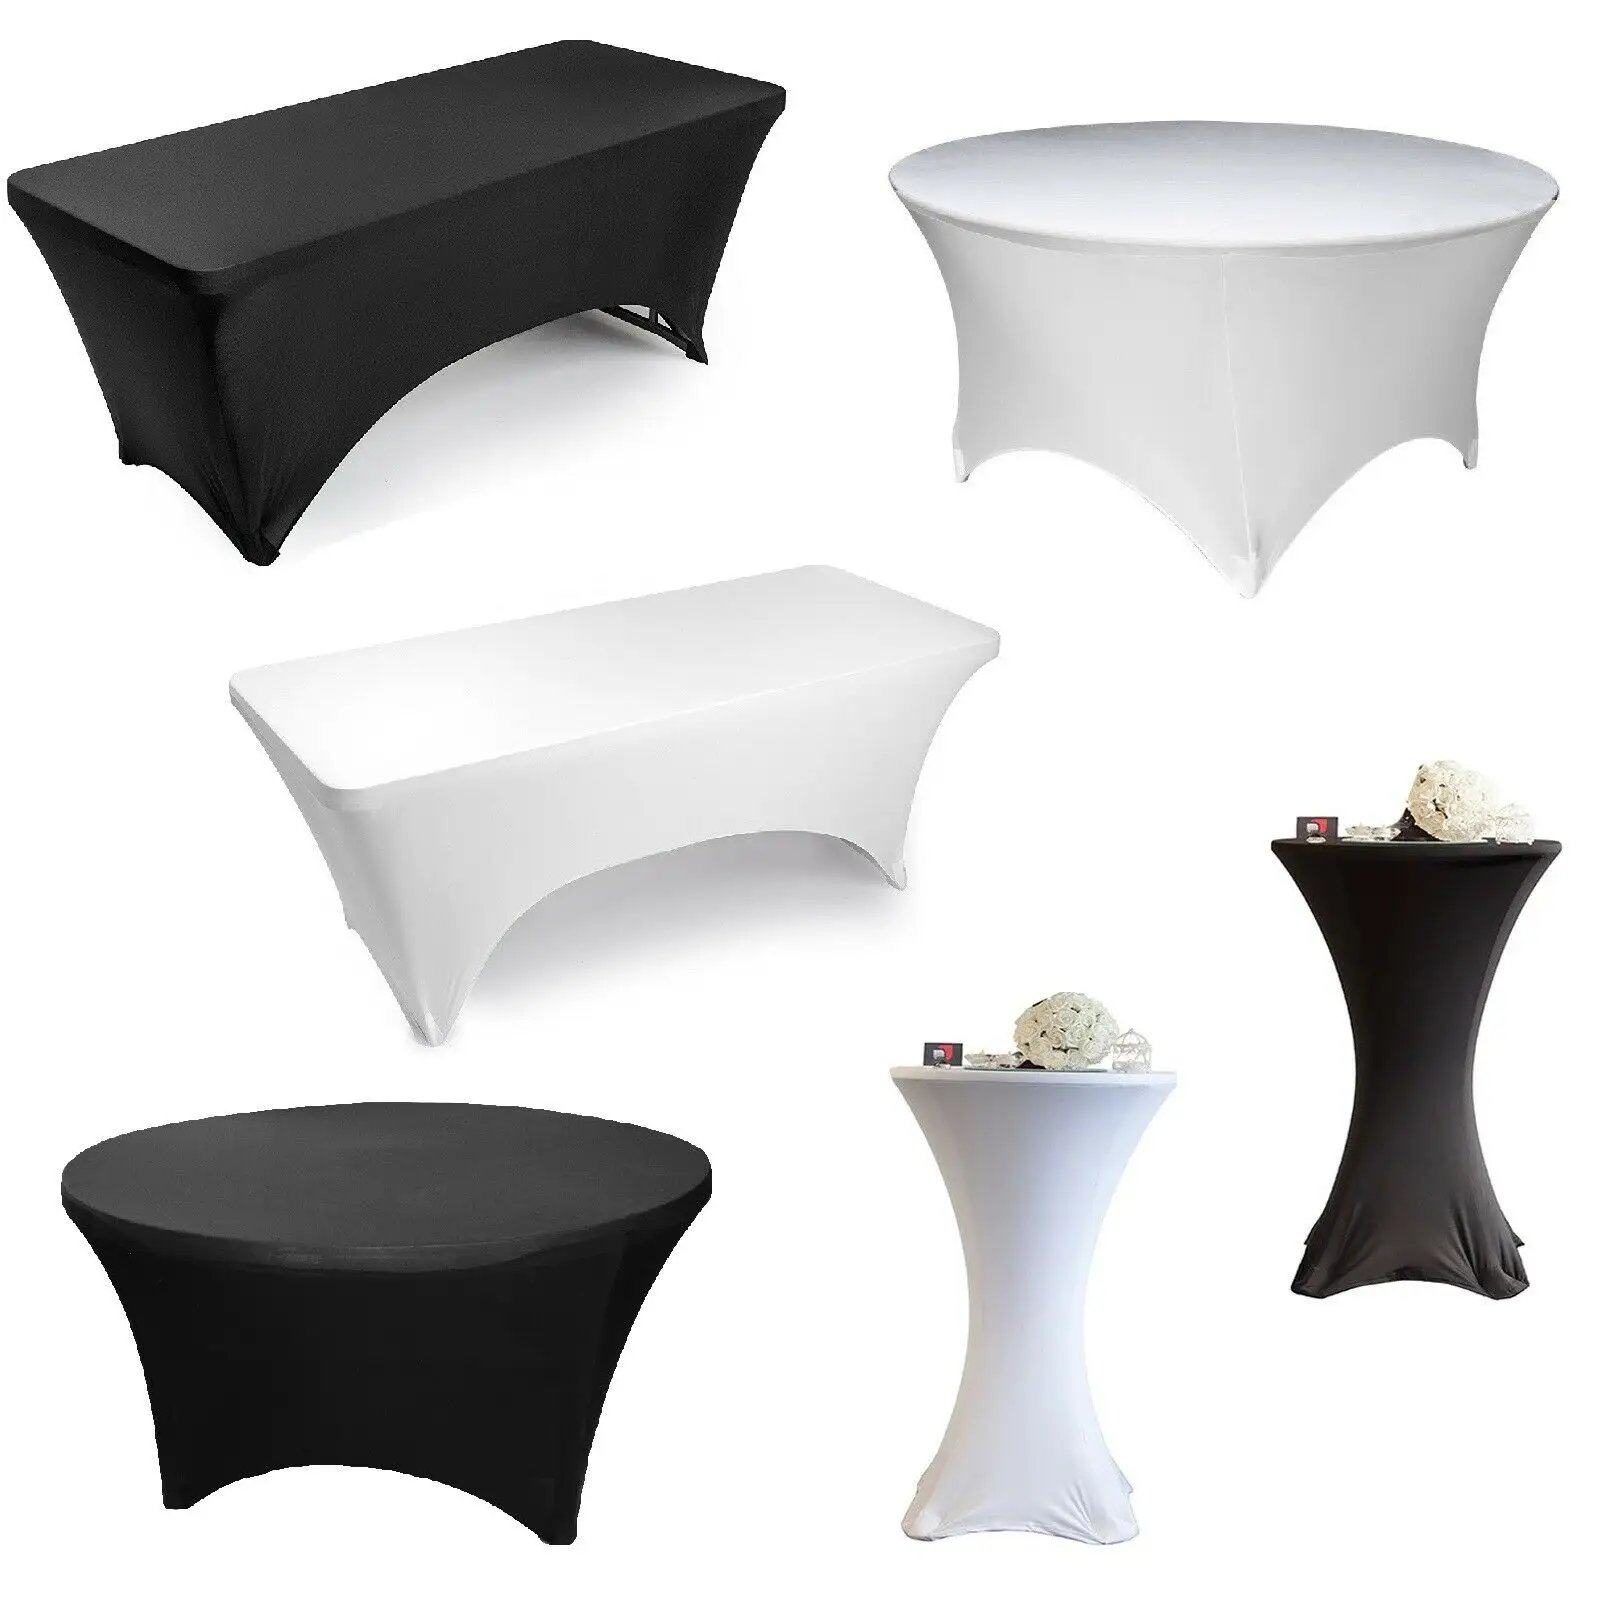 Couverture de Table ronde et rectangulaire en Spandex, nappe extensible pour fête de mariage, vente en gros, qualité supérieure